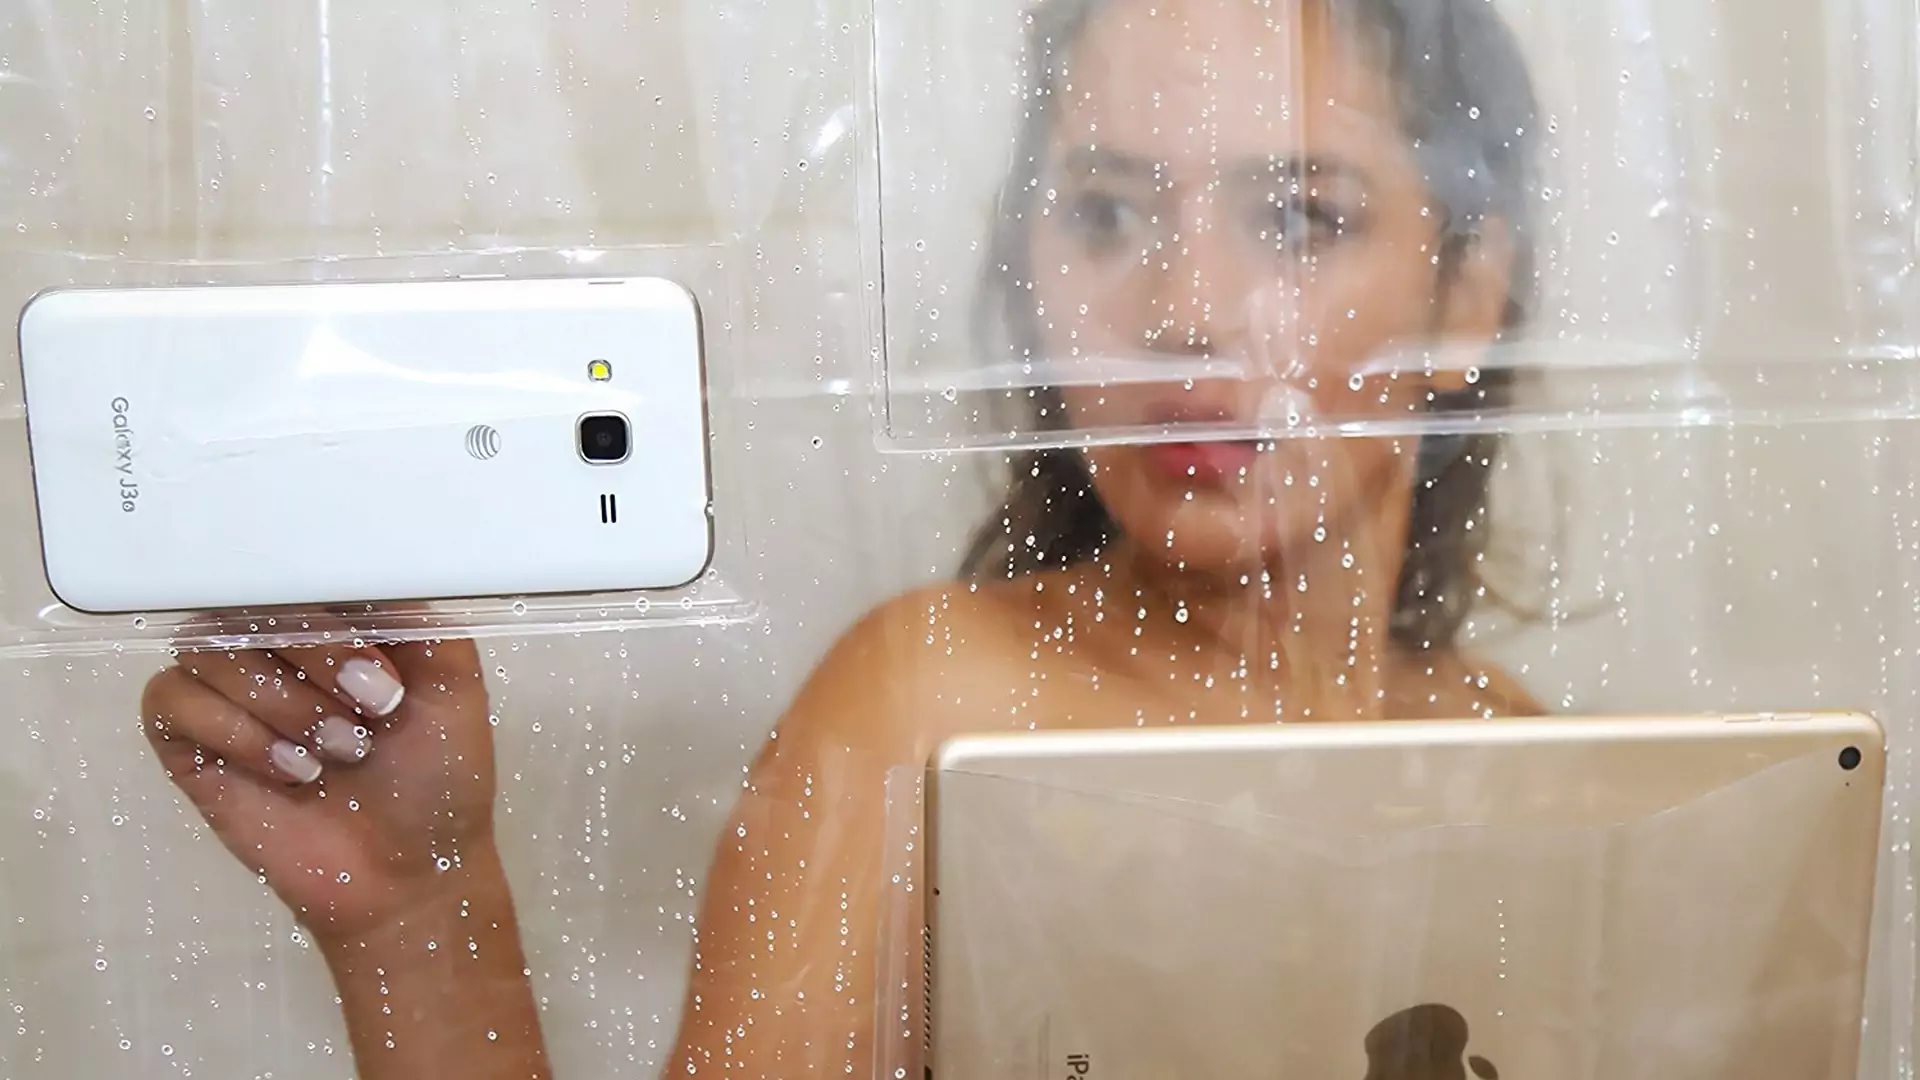 Zasłona prysznicowa z kieszonkami na smartfona i tablet. Ludzkość otrzymała kolejny niezbędny produkt